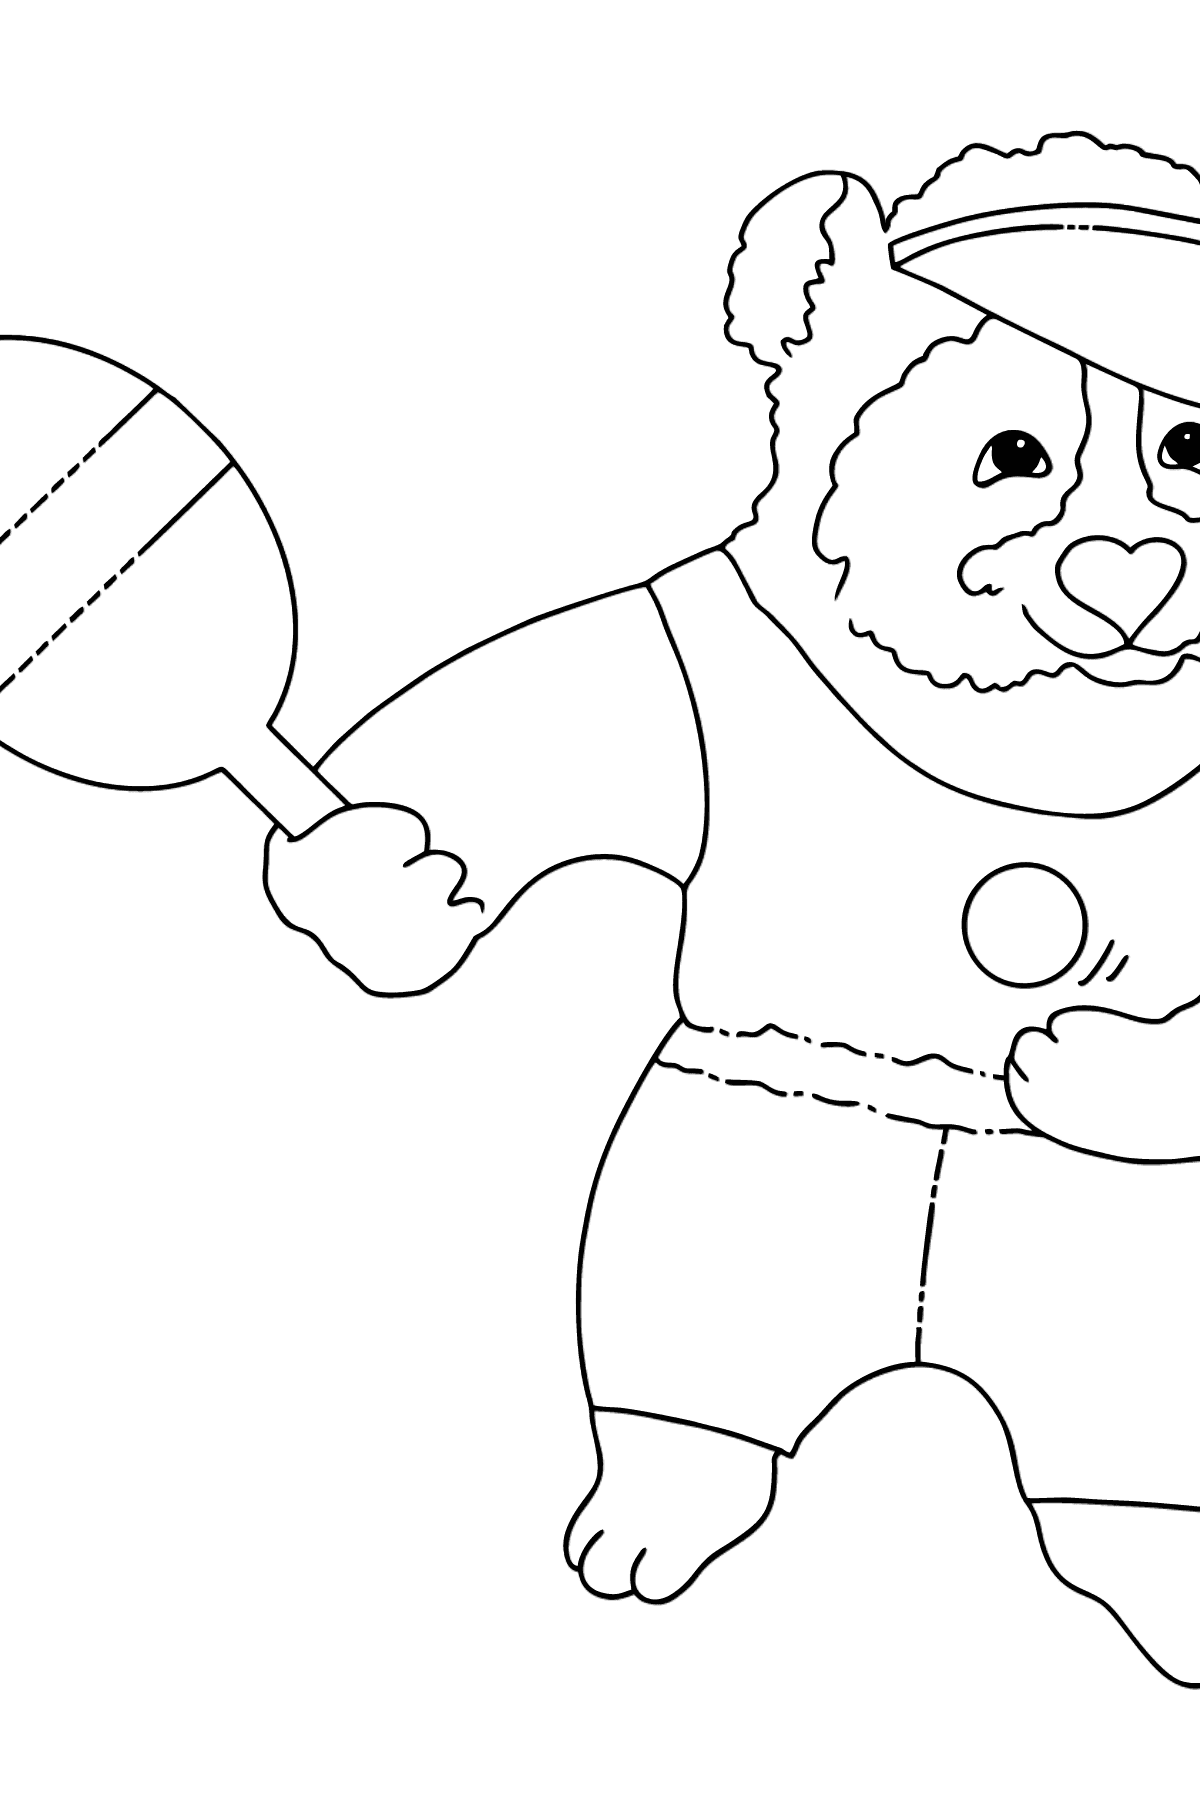 Dibujo de Adorable Panda (Simple) para colorear - Dibujos para Colorear para Niños